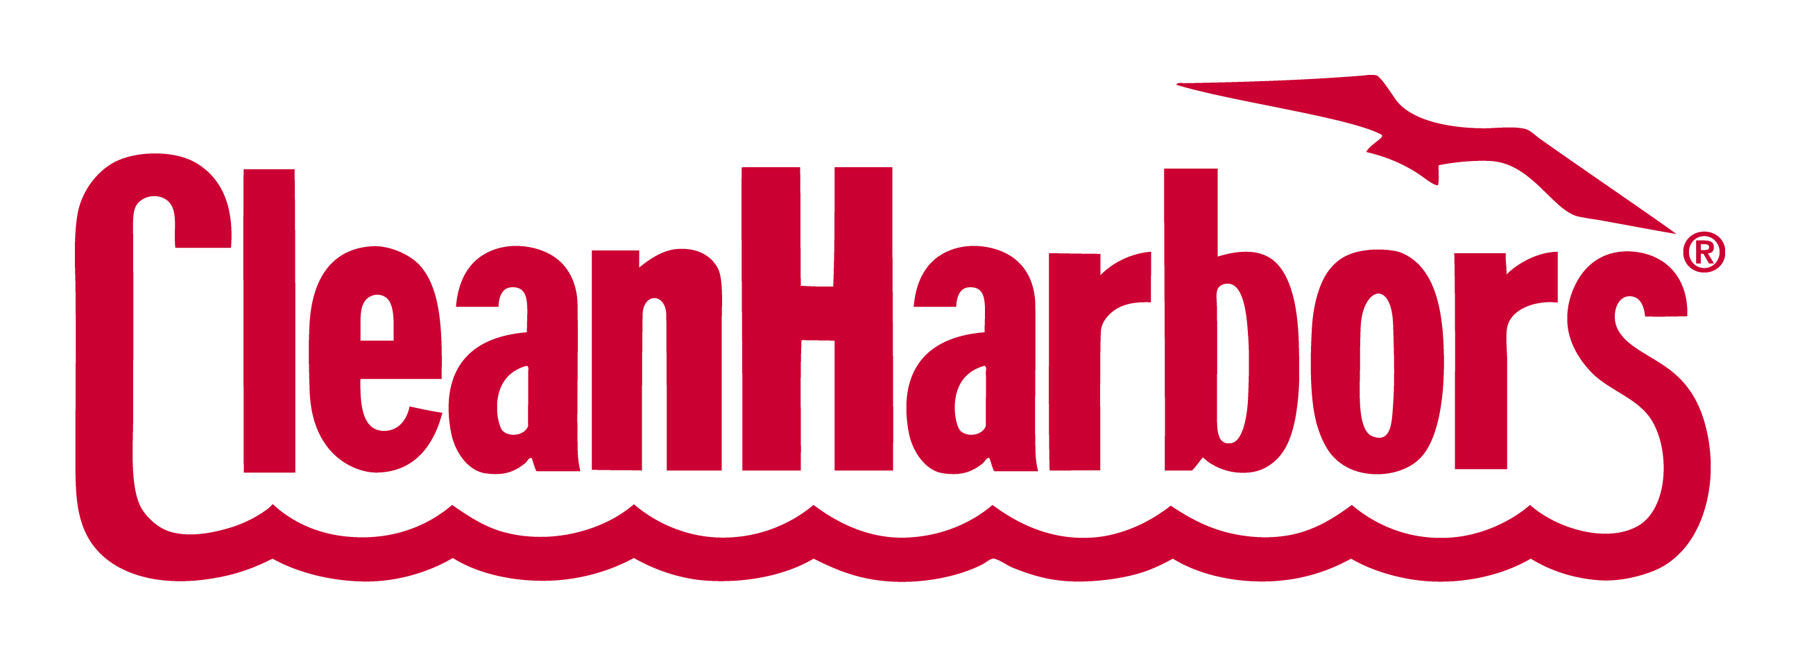 clean harbor logo